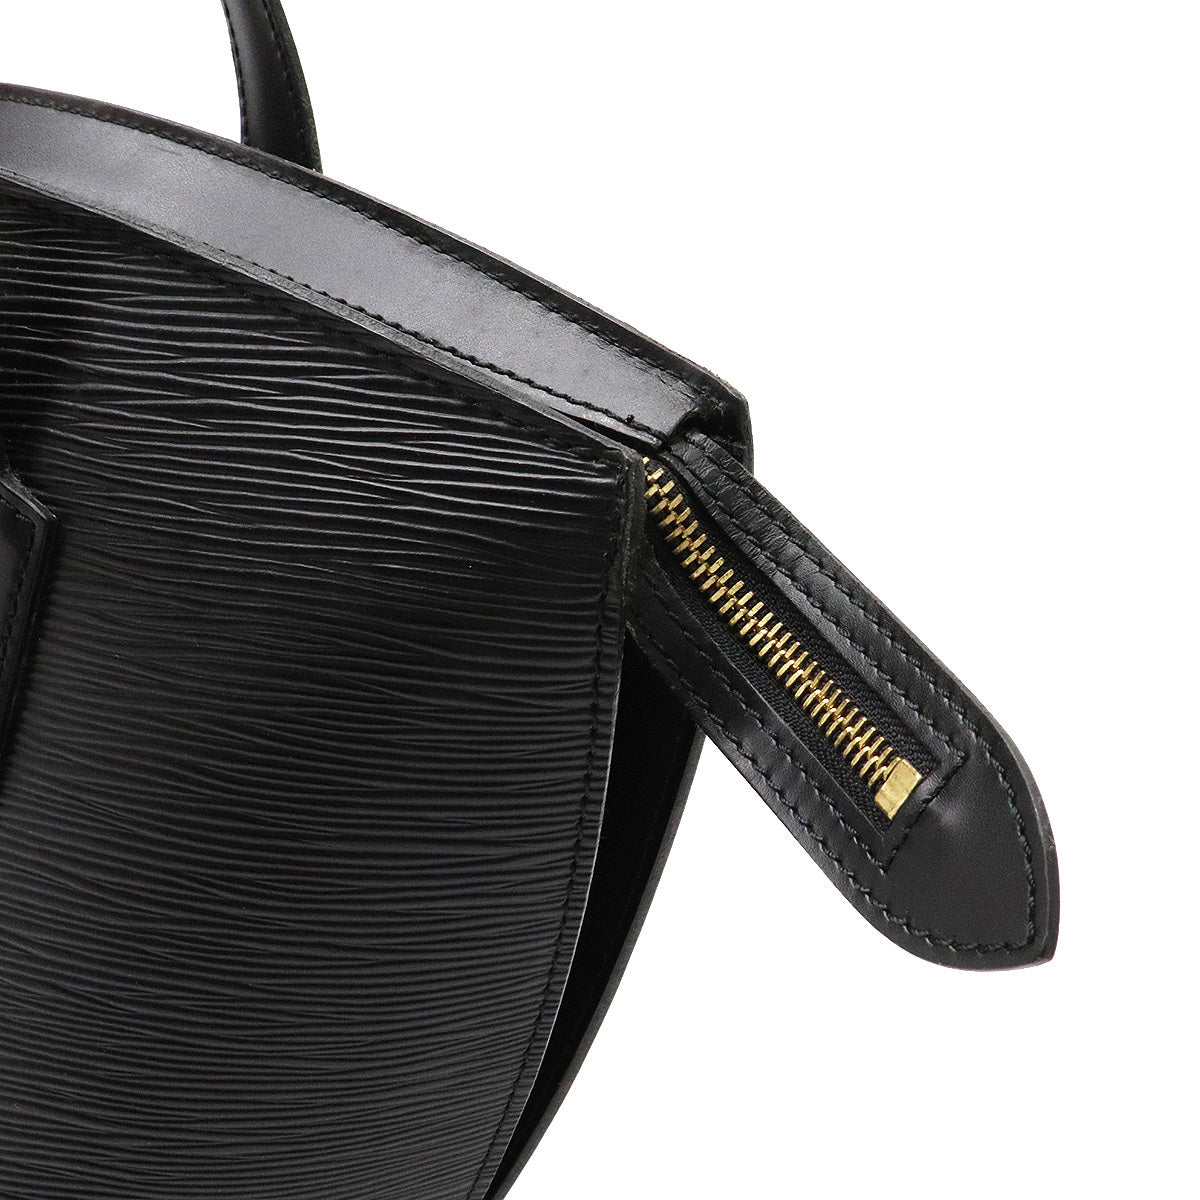 Saint jacques leather handbag Louis Vuitton Black in Leather